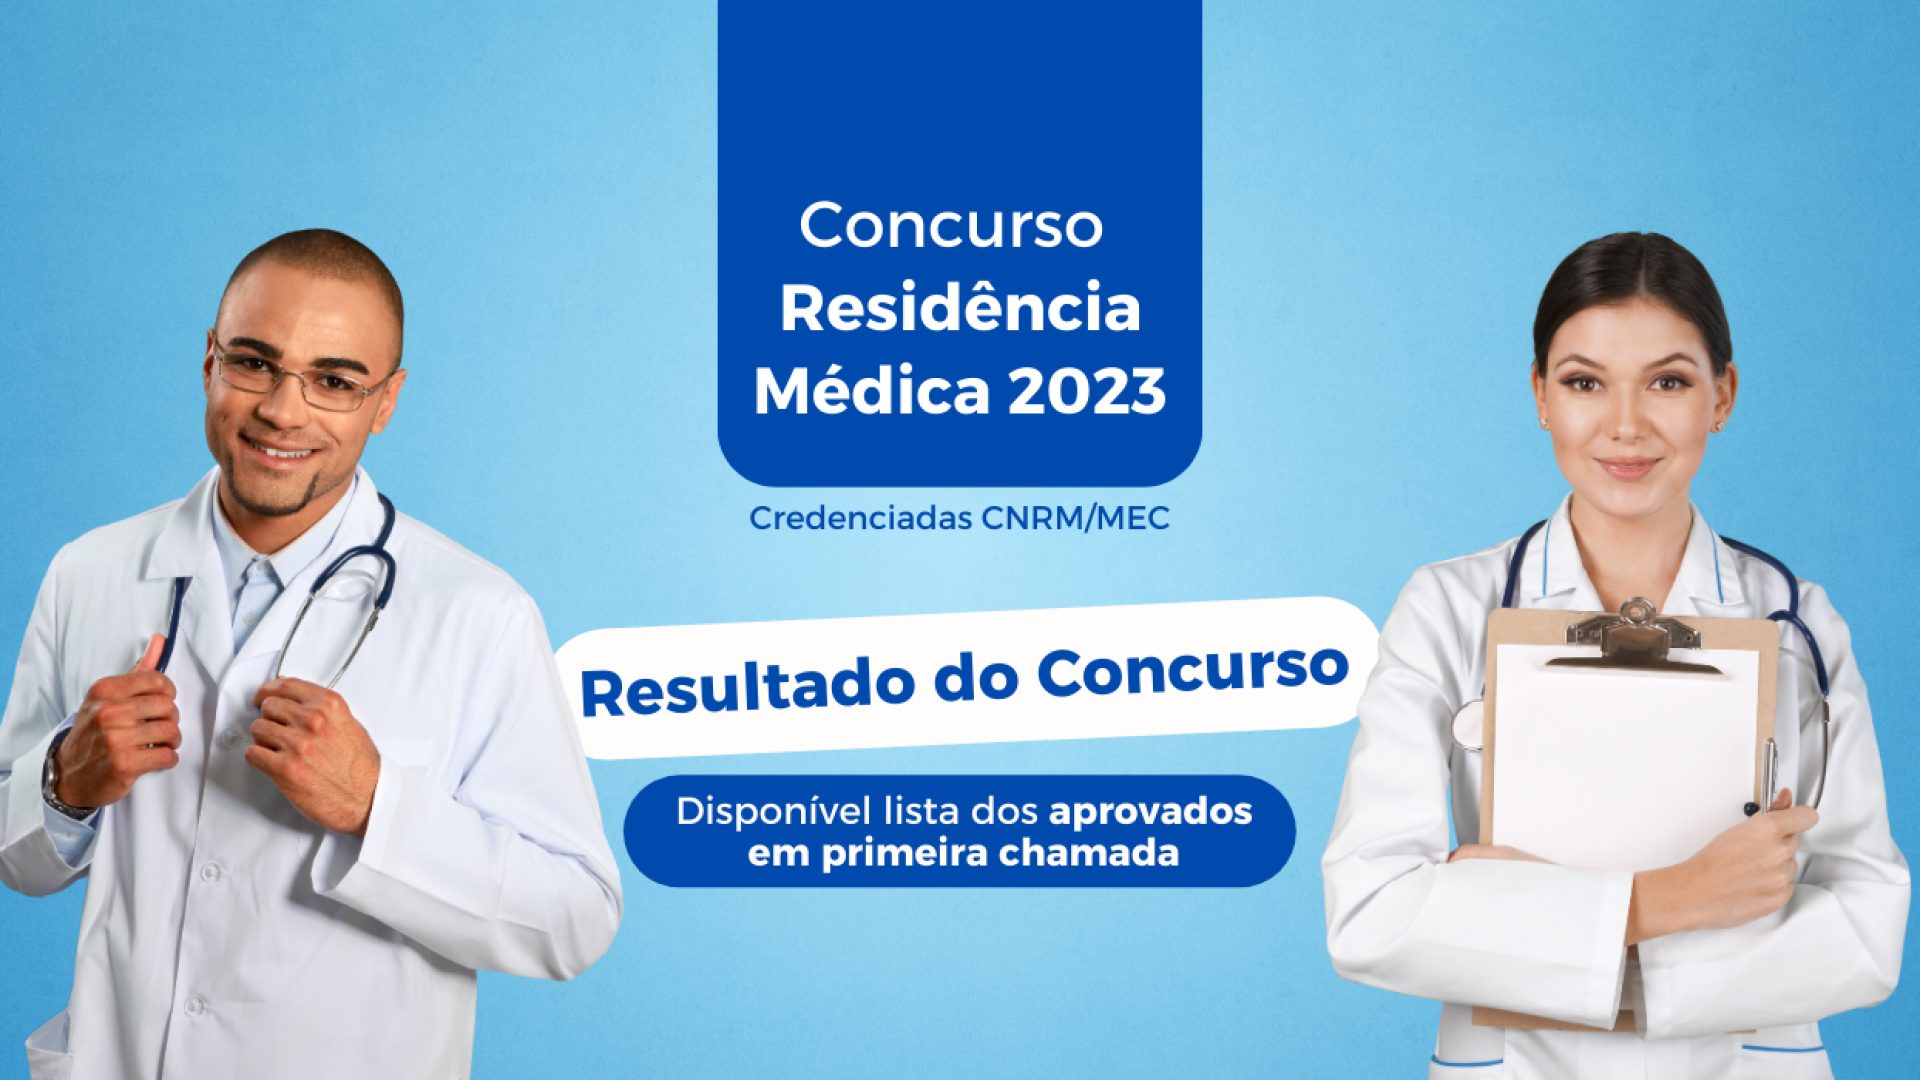 Editais de Residência Médica 2023 - Revisamed lista principais concursos